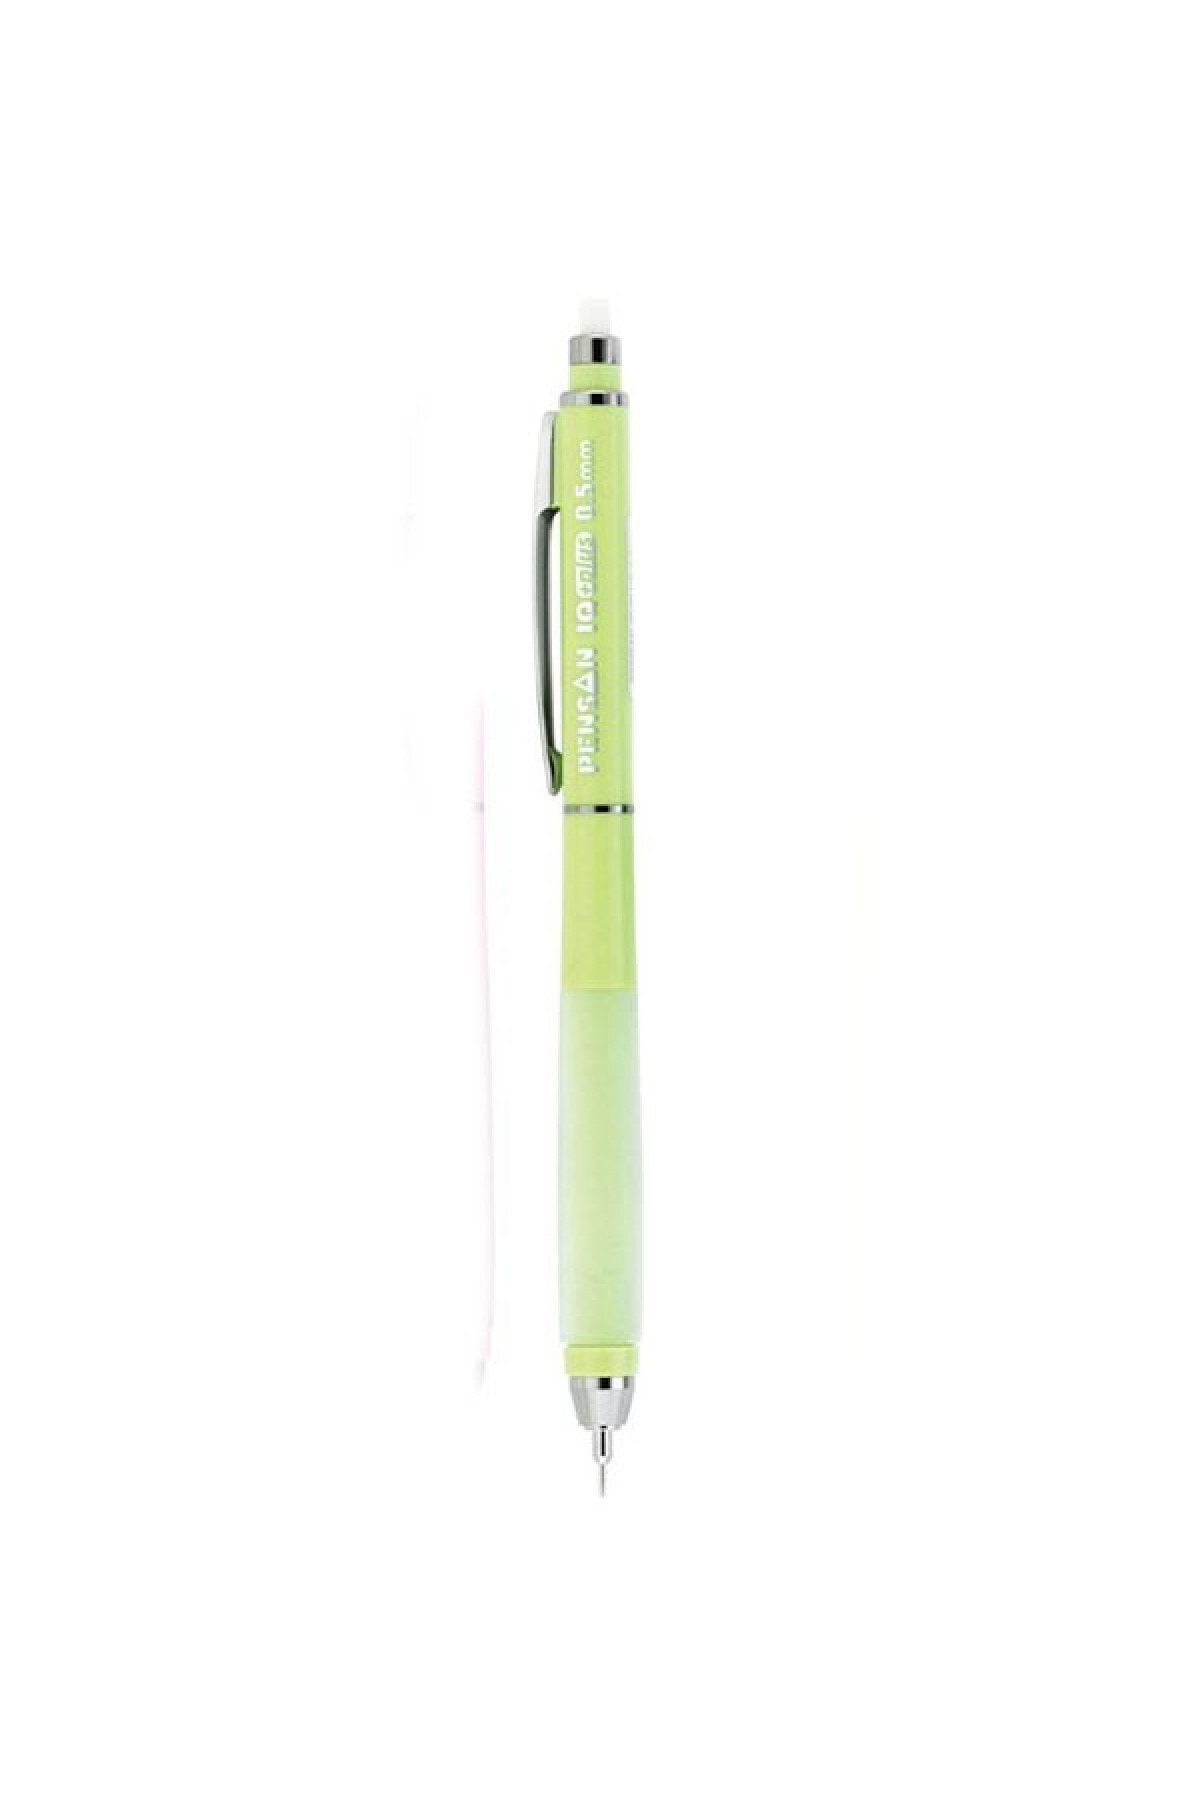 Pensan Iq Plus 0.5 Uçlu Versatil Kalem Pastel Renkler Açık Yeşil